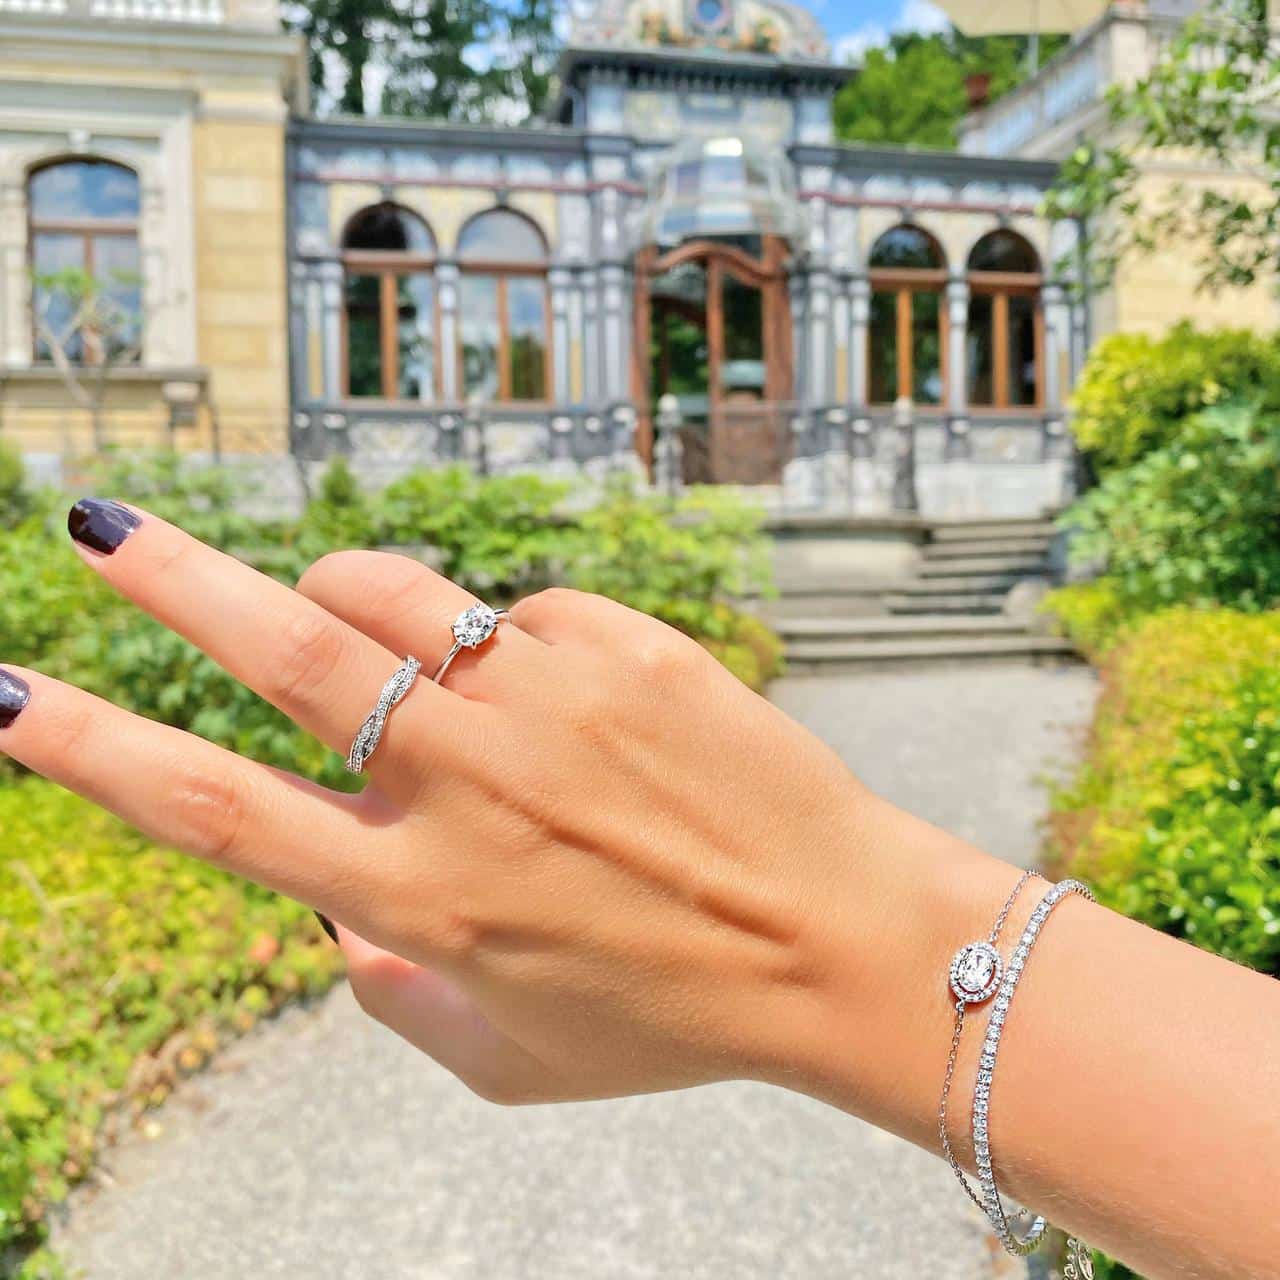 Ring aus Sterling Silber mit ovalem Zirkonia mit Kranz gestylt zu weiterem Schmuck vor Villa in Zürich